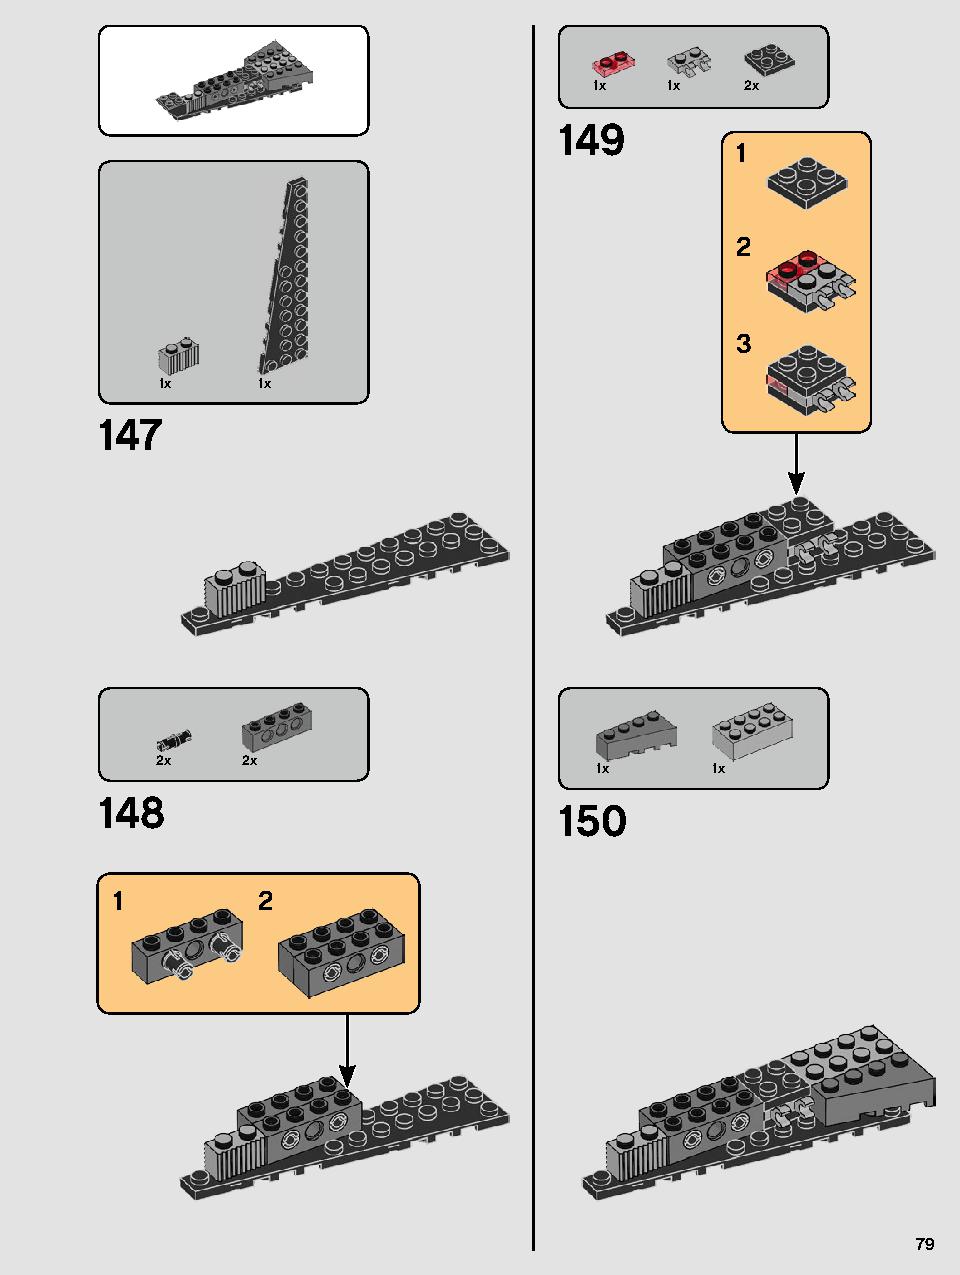 스타워즈 카일로 렌의 셔틀™ 75256 레고 세트 제품정보 레고 조립설명서 79 page